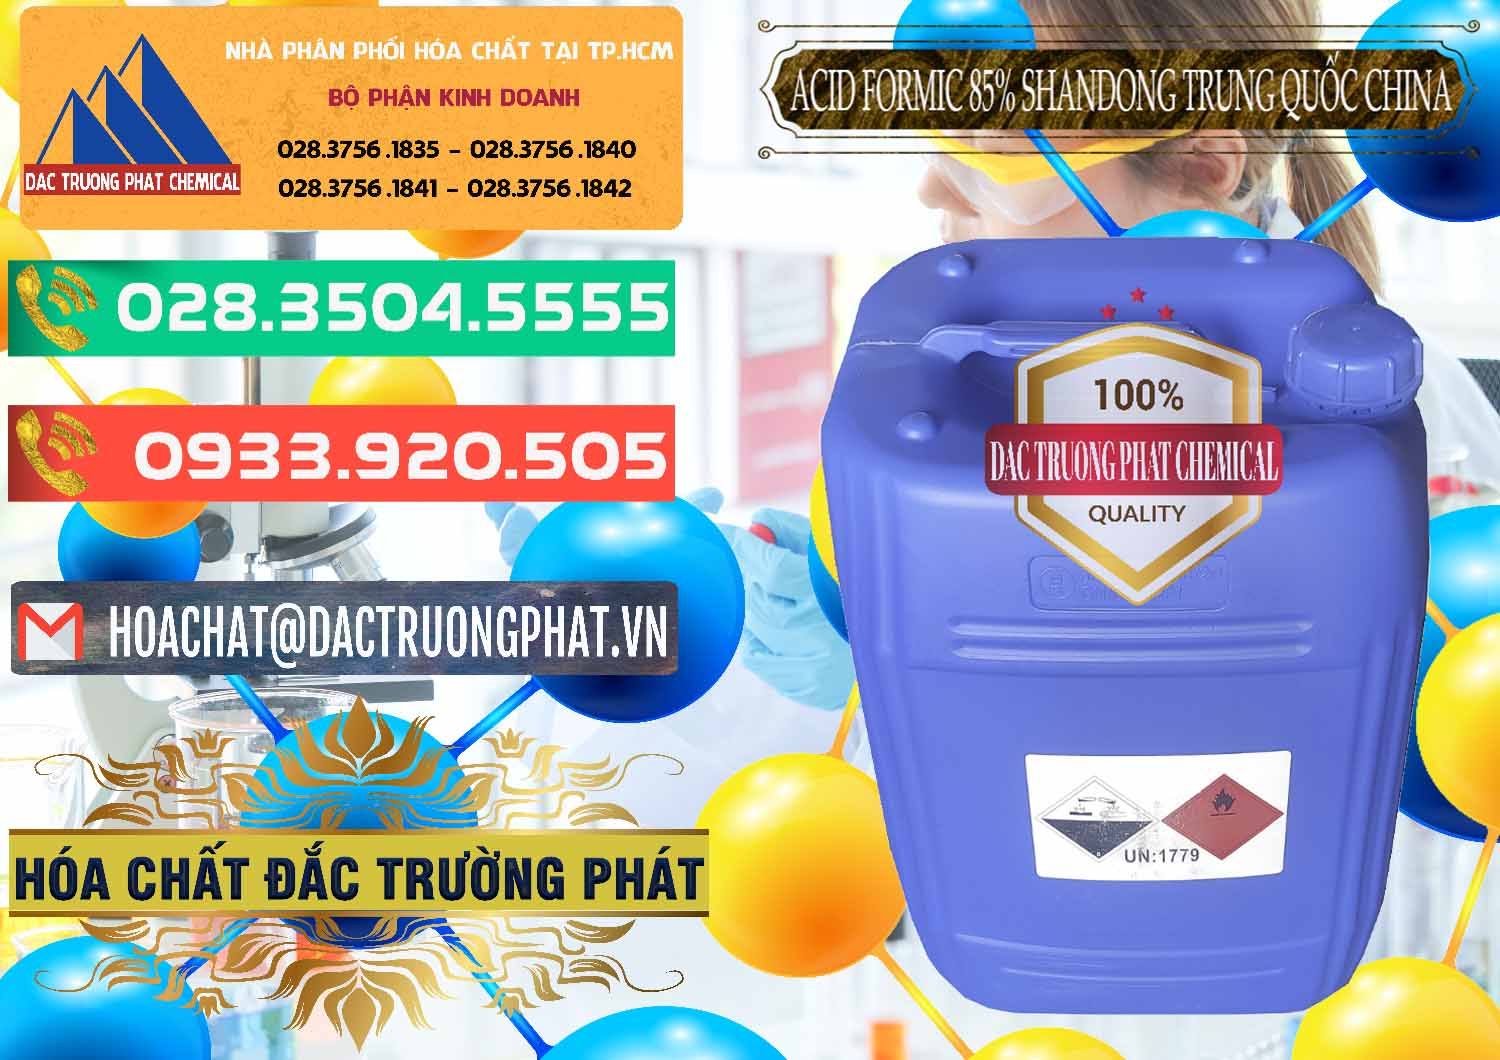 Cty bán & cung ứng Acid Formic - Axit Formic 85% Shandong Trung Quốc China - 0235 - Đơn vị cung cấp & bán hóa chất tại TP.HCM - congtyhoachat.com.vn